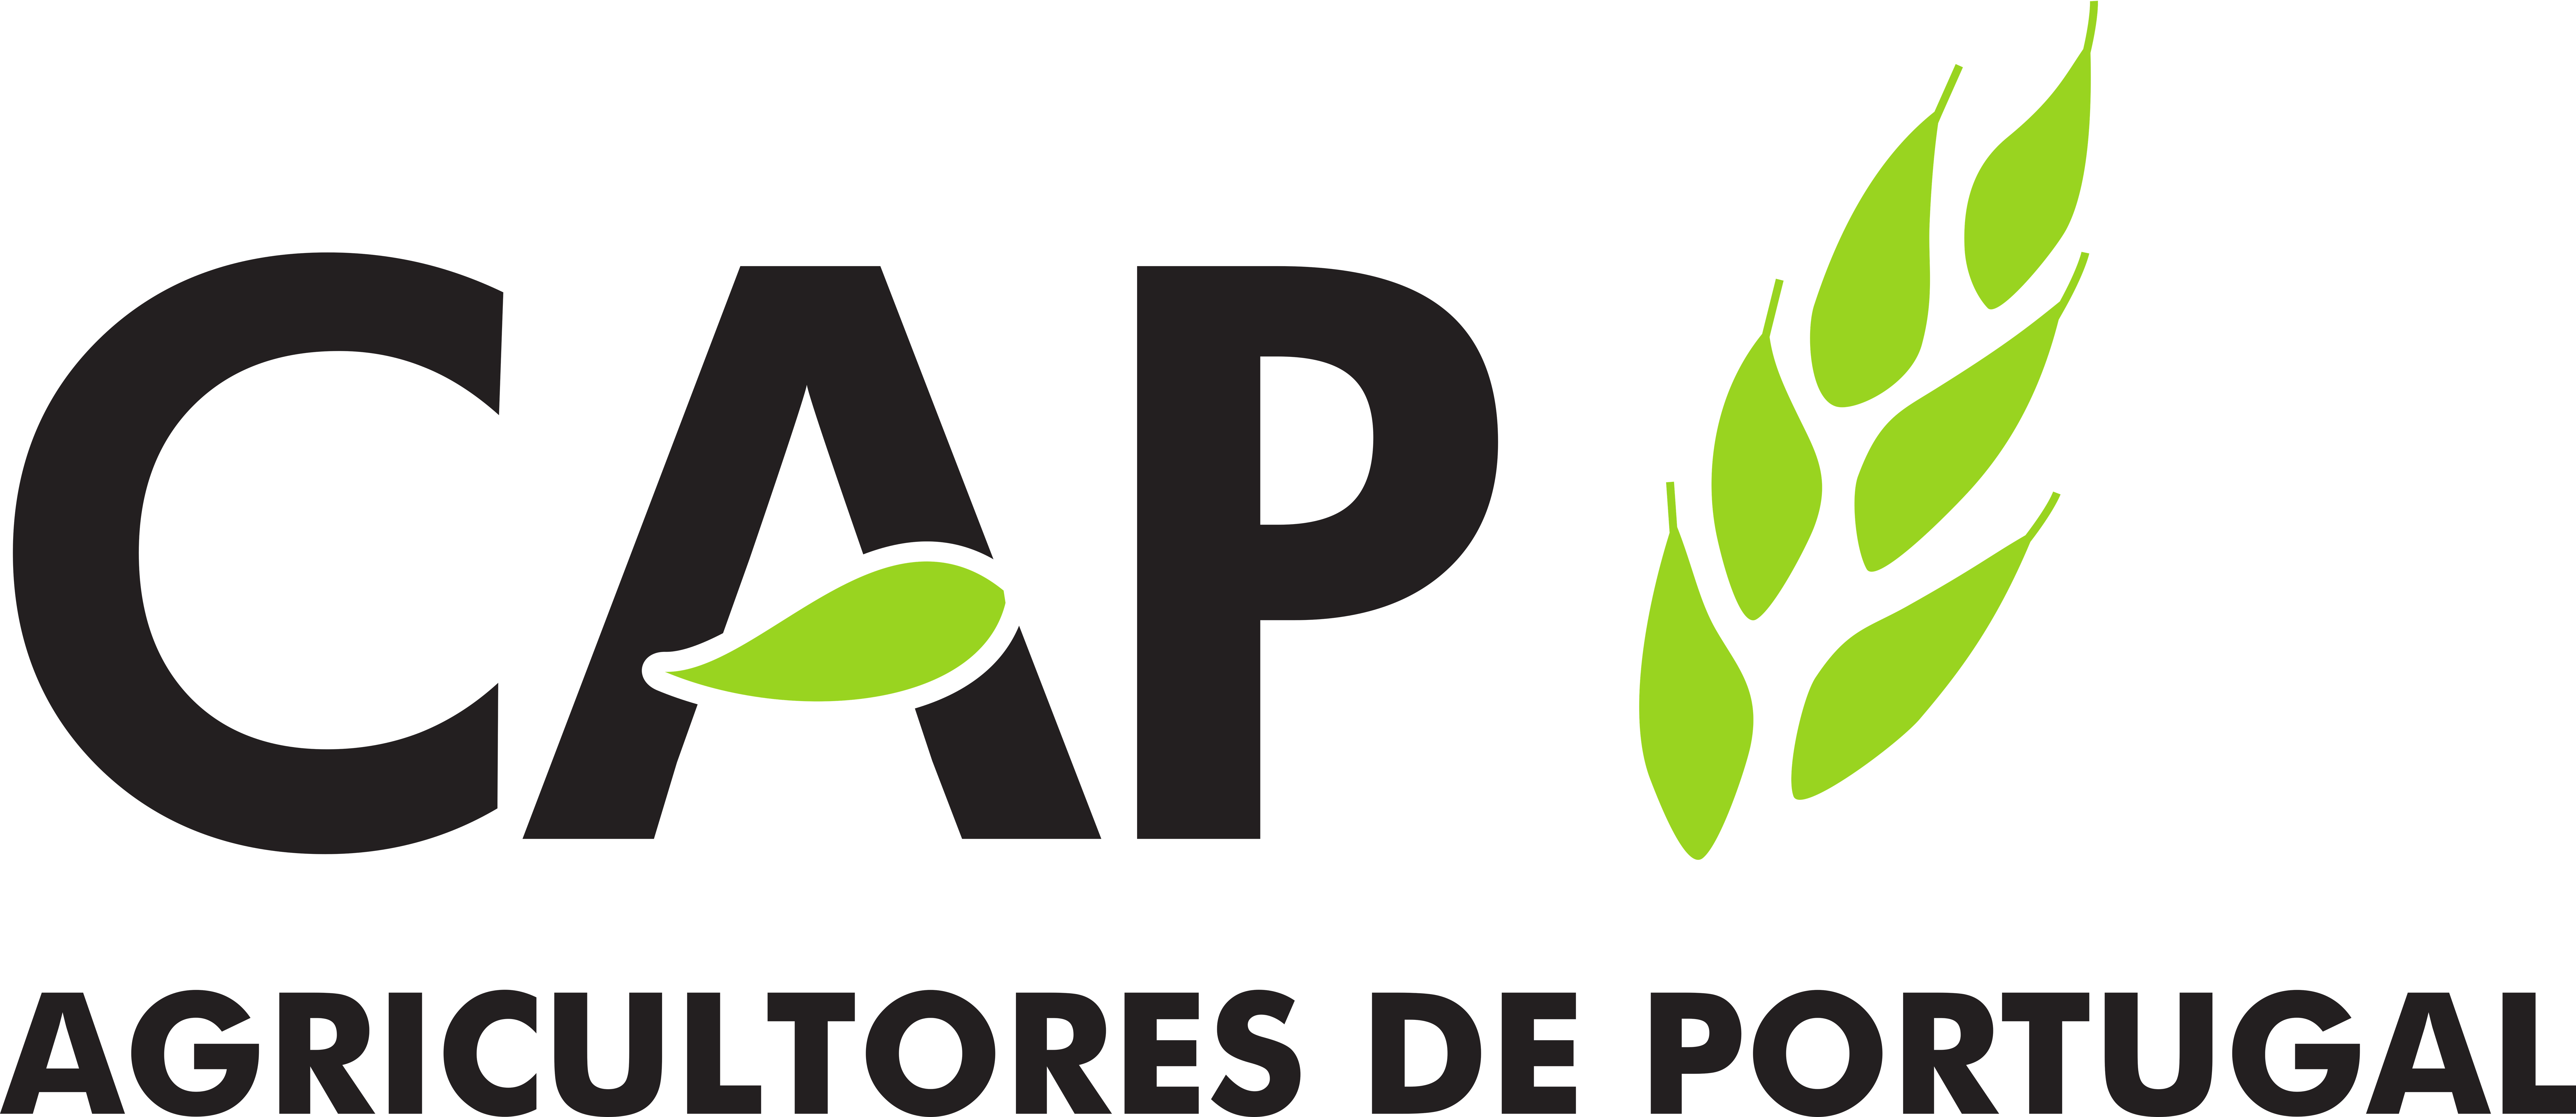 CAP - Confederação dos Agricultores de Portugal